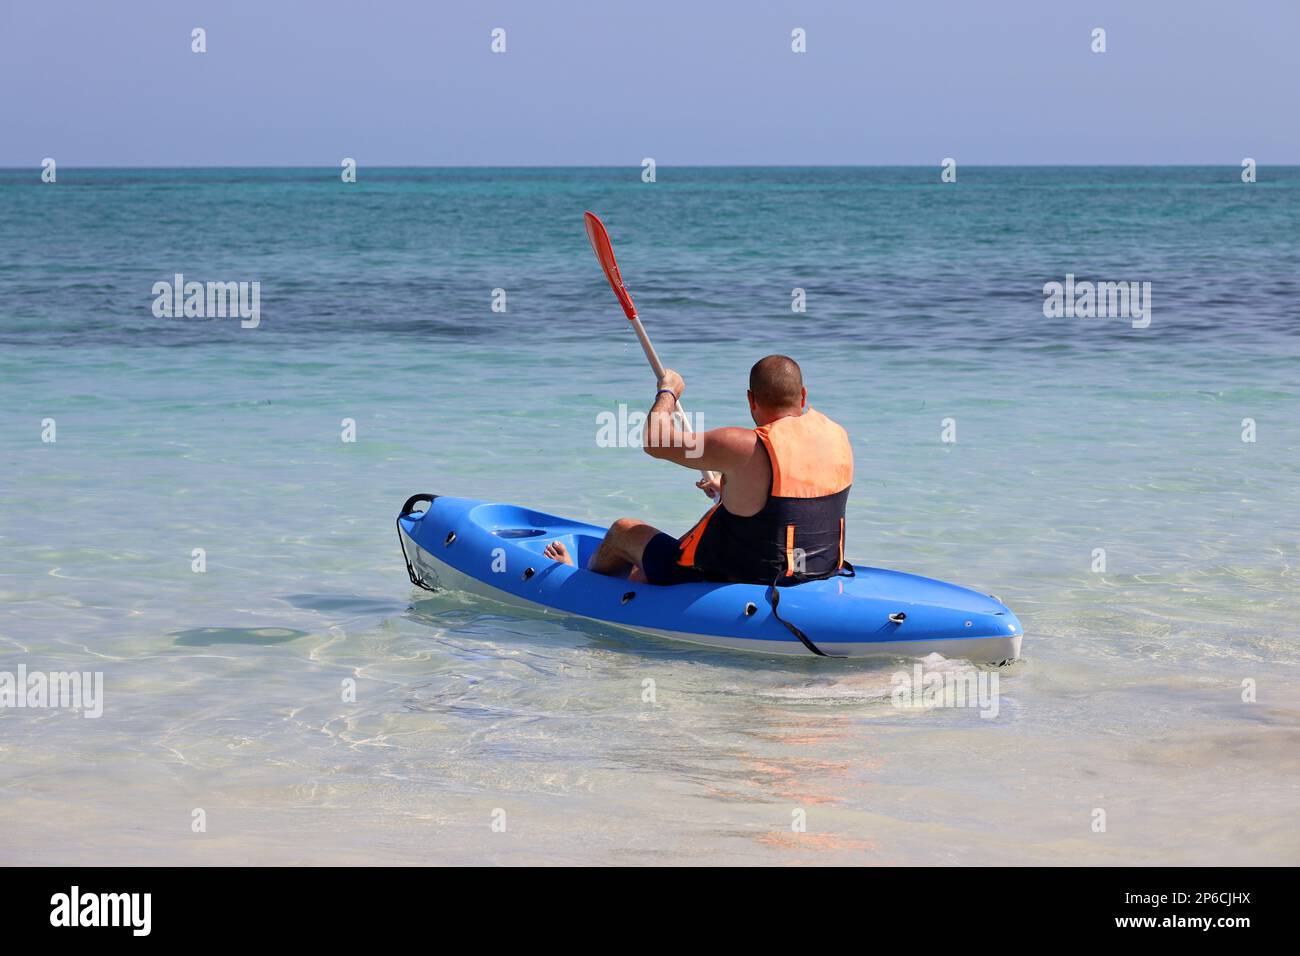 Kayak dans la mer, homme portant gilet de sauvetage assis avec paddle en canoë. Concept de voyage et de sports nautiques Banque D'Images